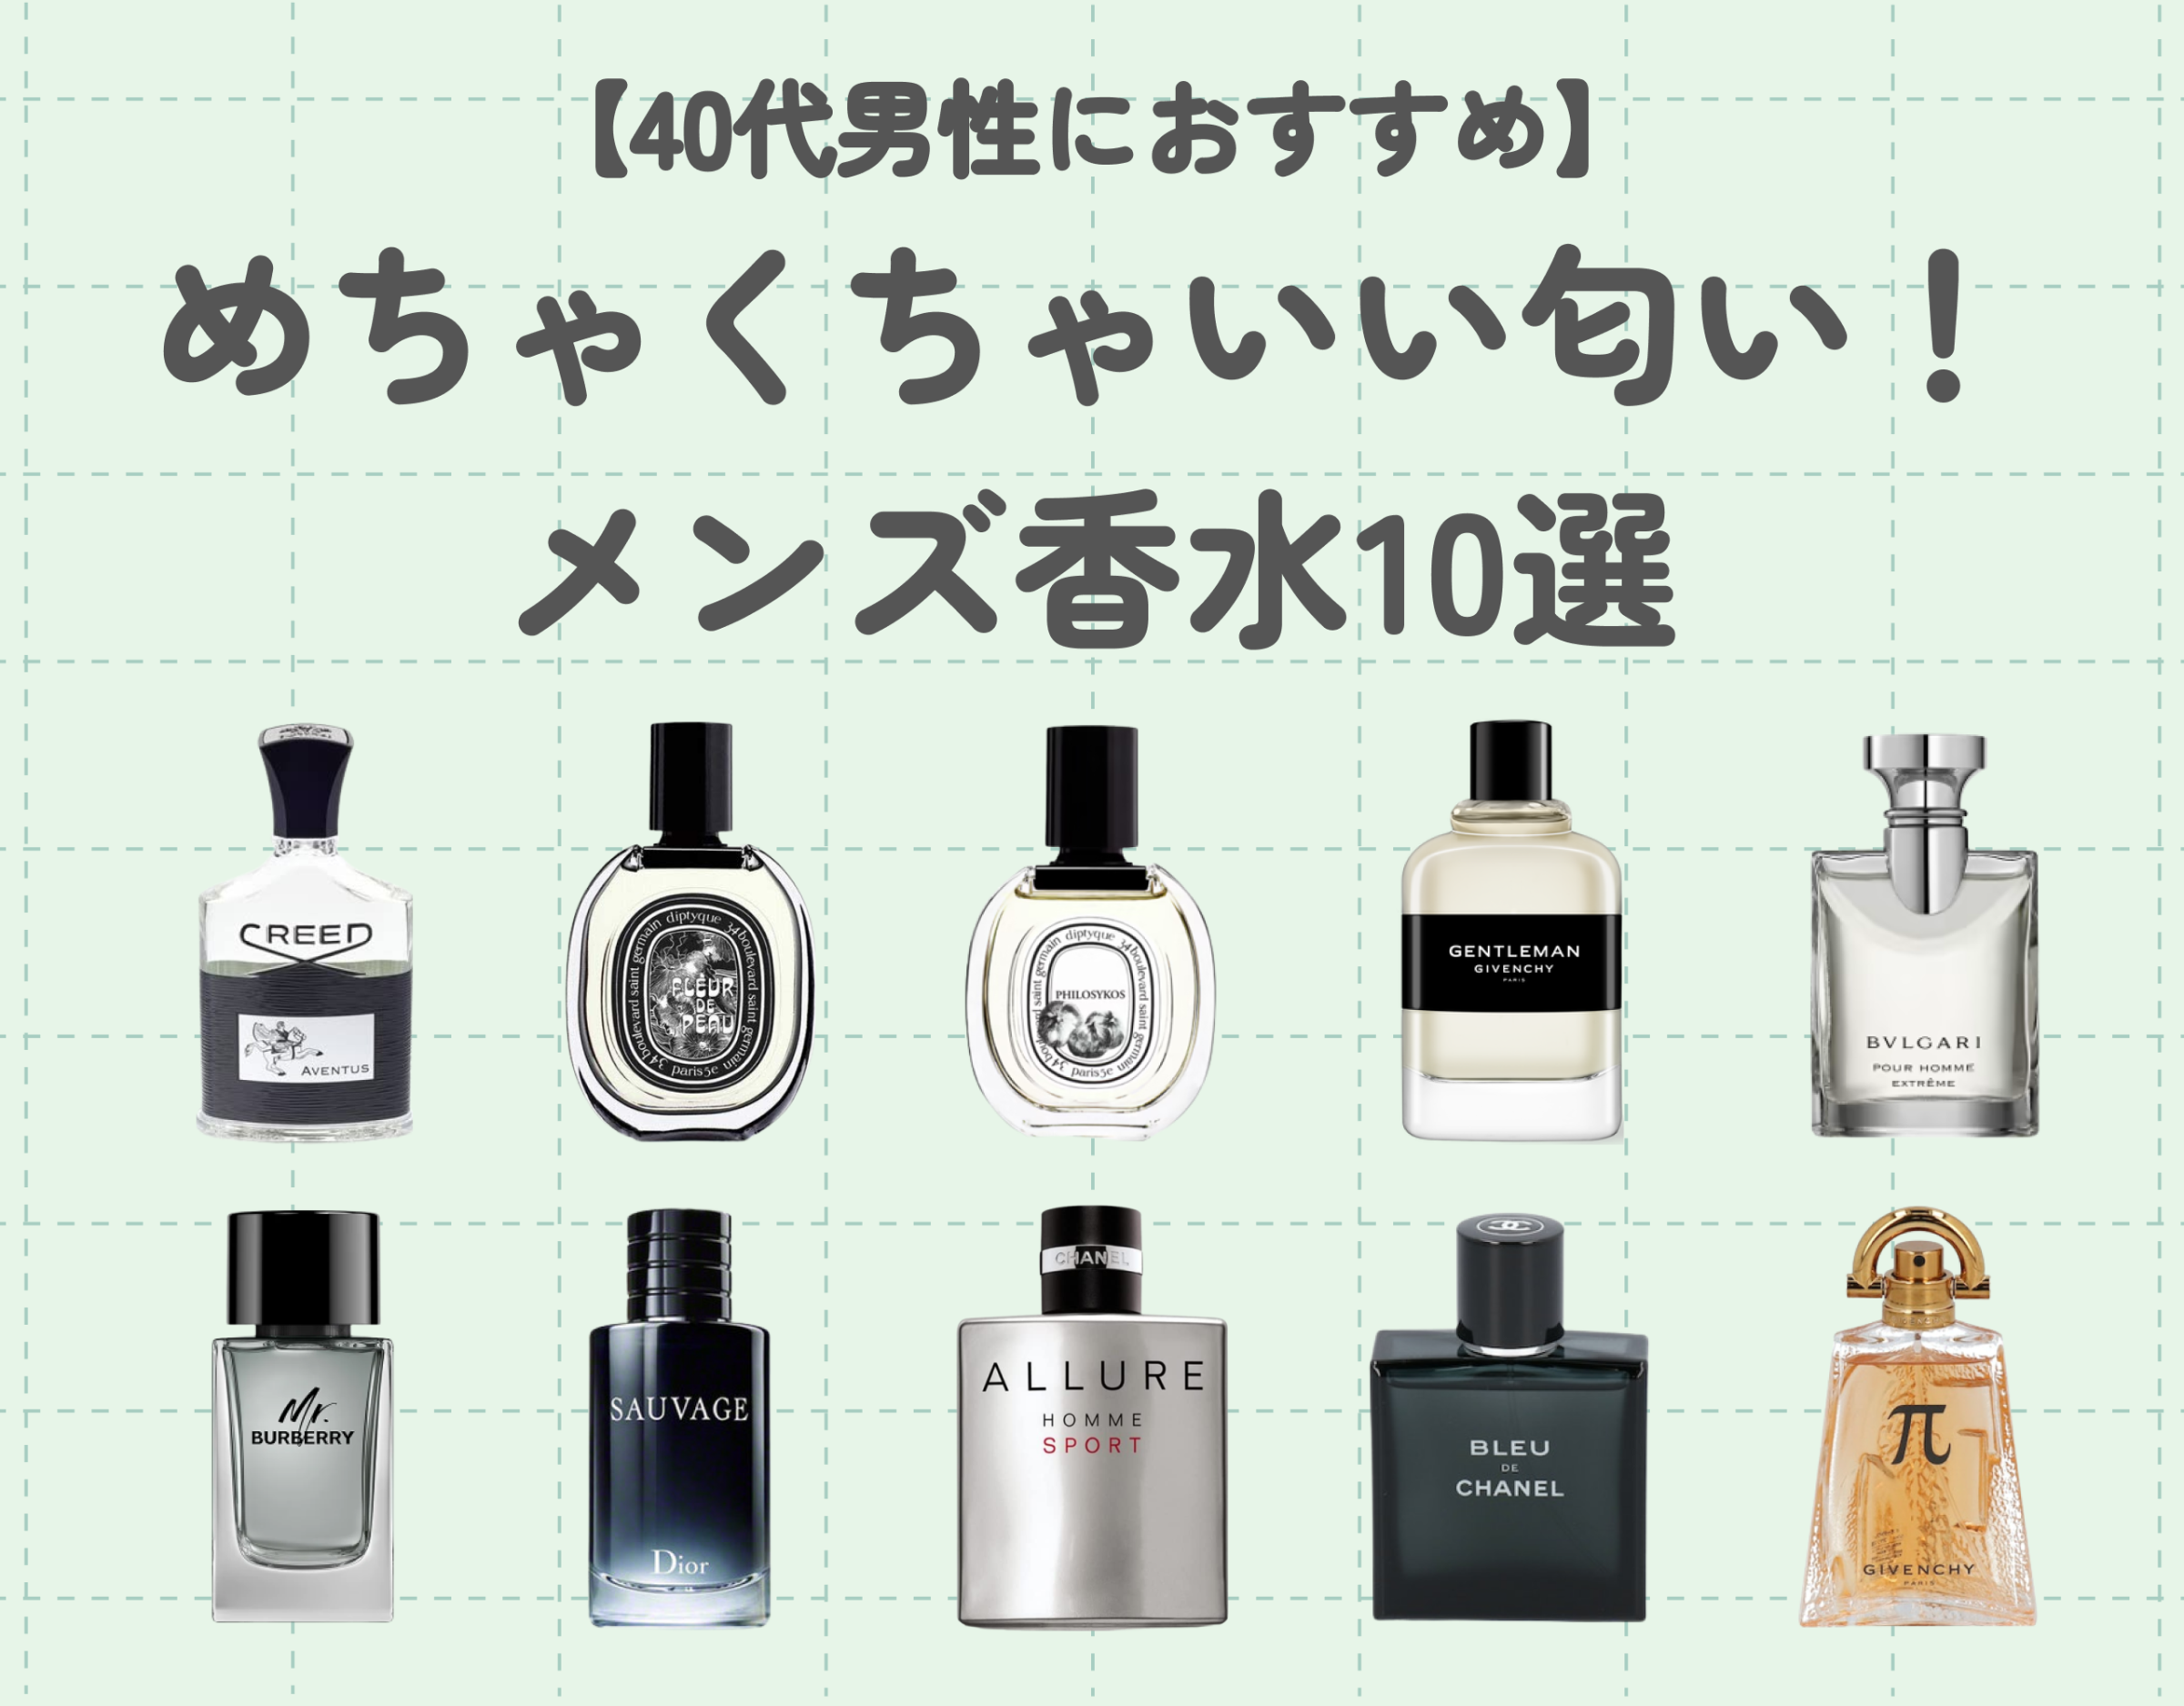 めちゃくちゃいい匂いのメンズ香水10選【40代男性におすすめ】 | Ease9